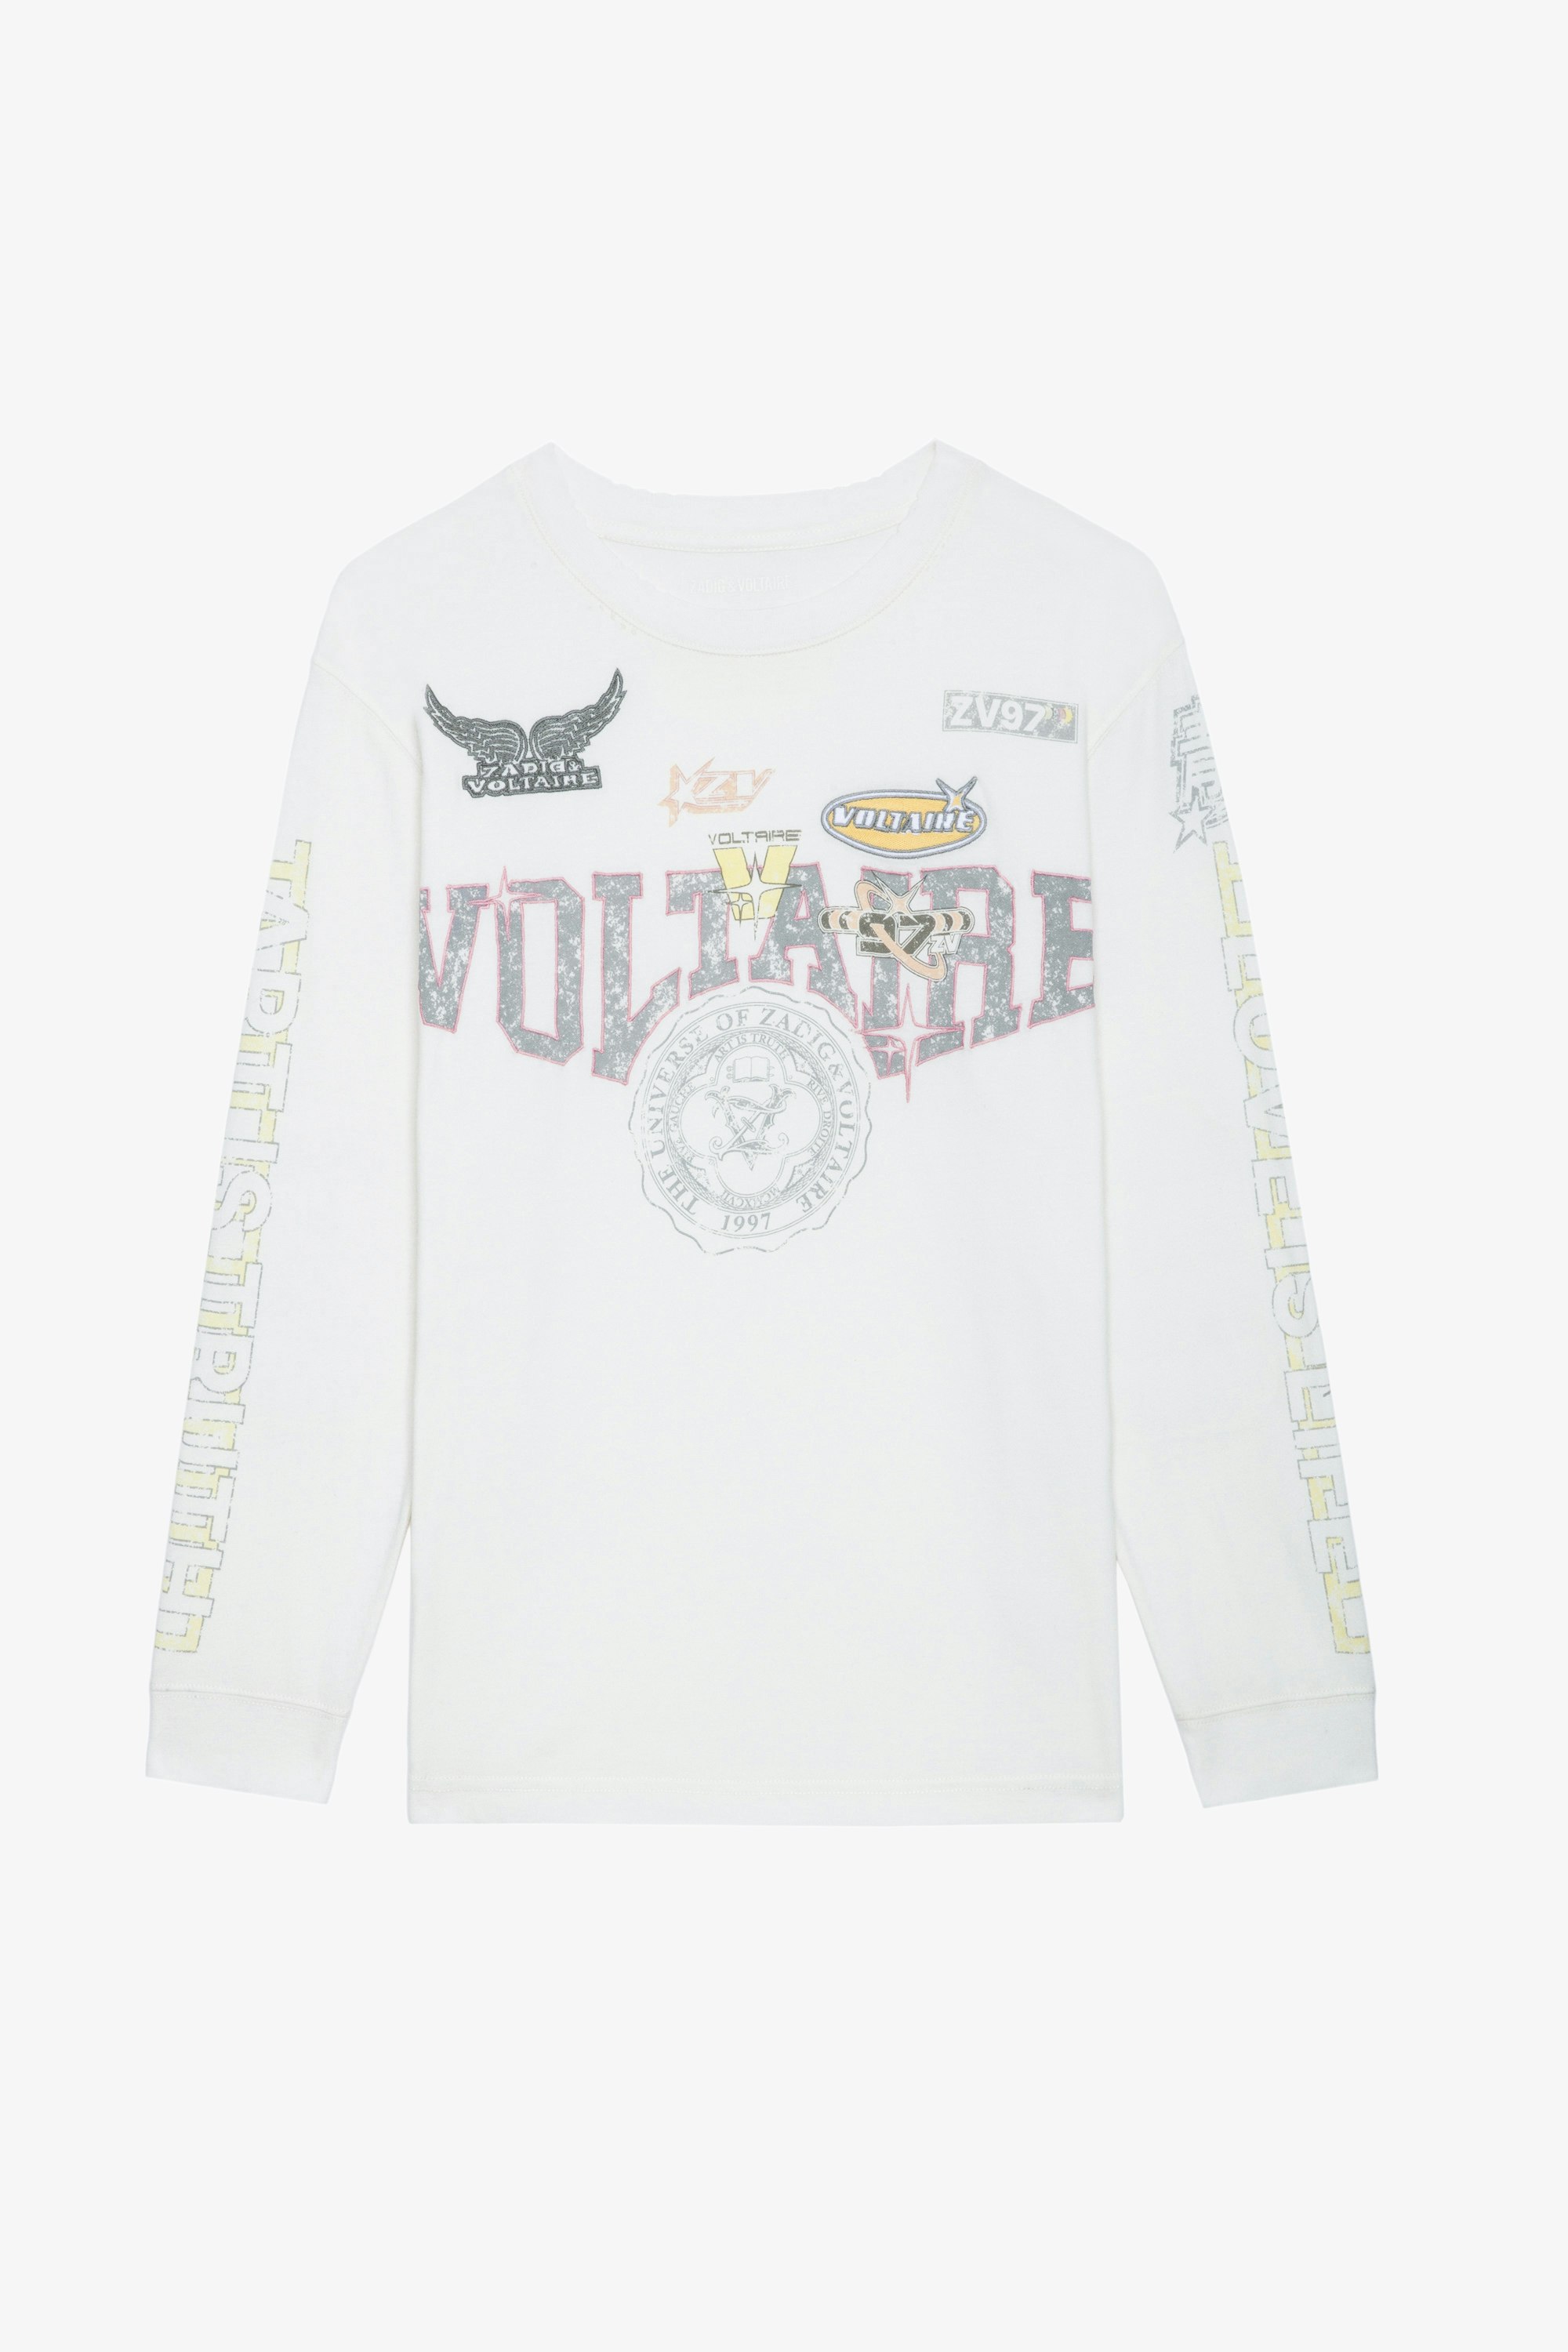 T-shirt Noane Voltaire - T-shirt à manches longues inspiration biker en coton écru à motifs badges Voltaire et rembourré aux coudes.